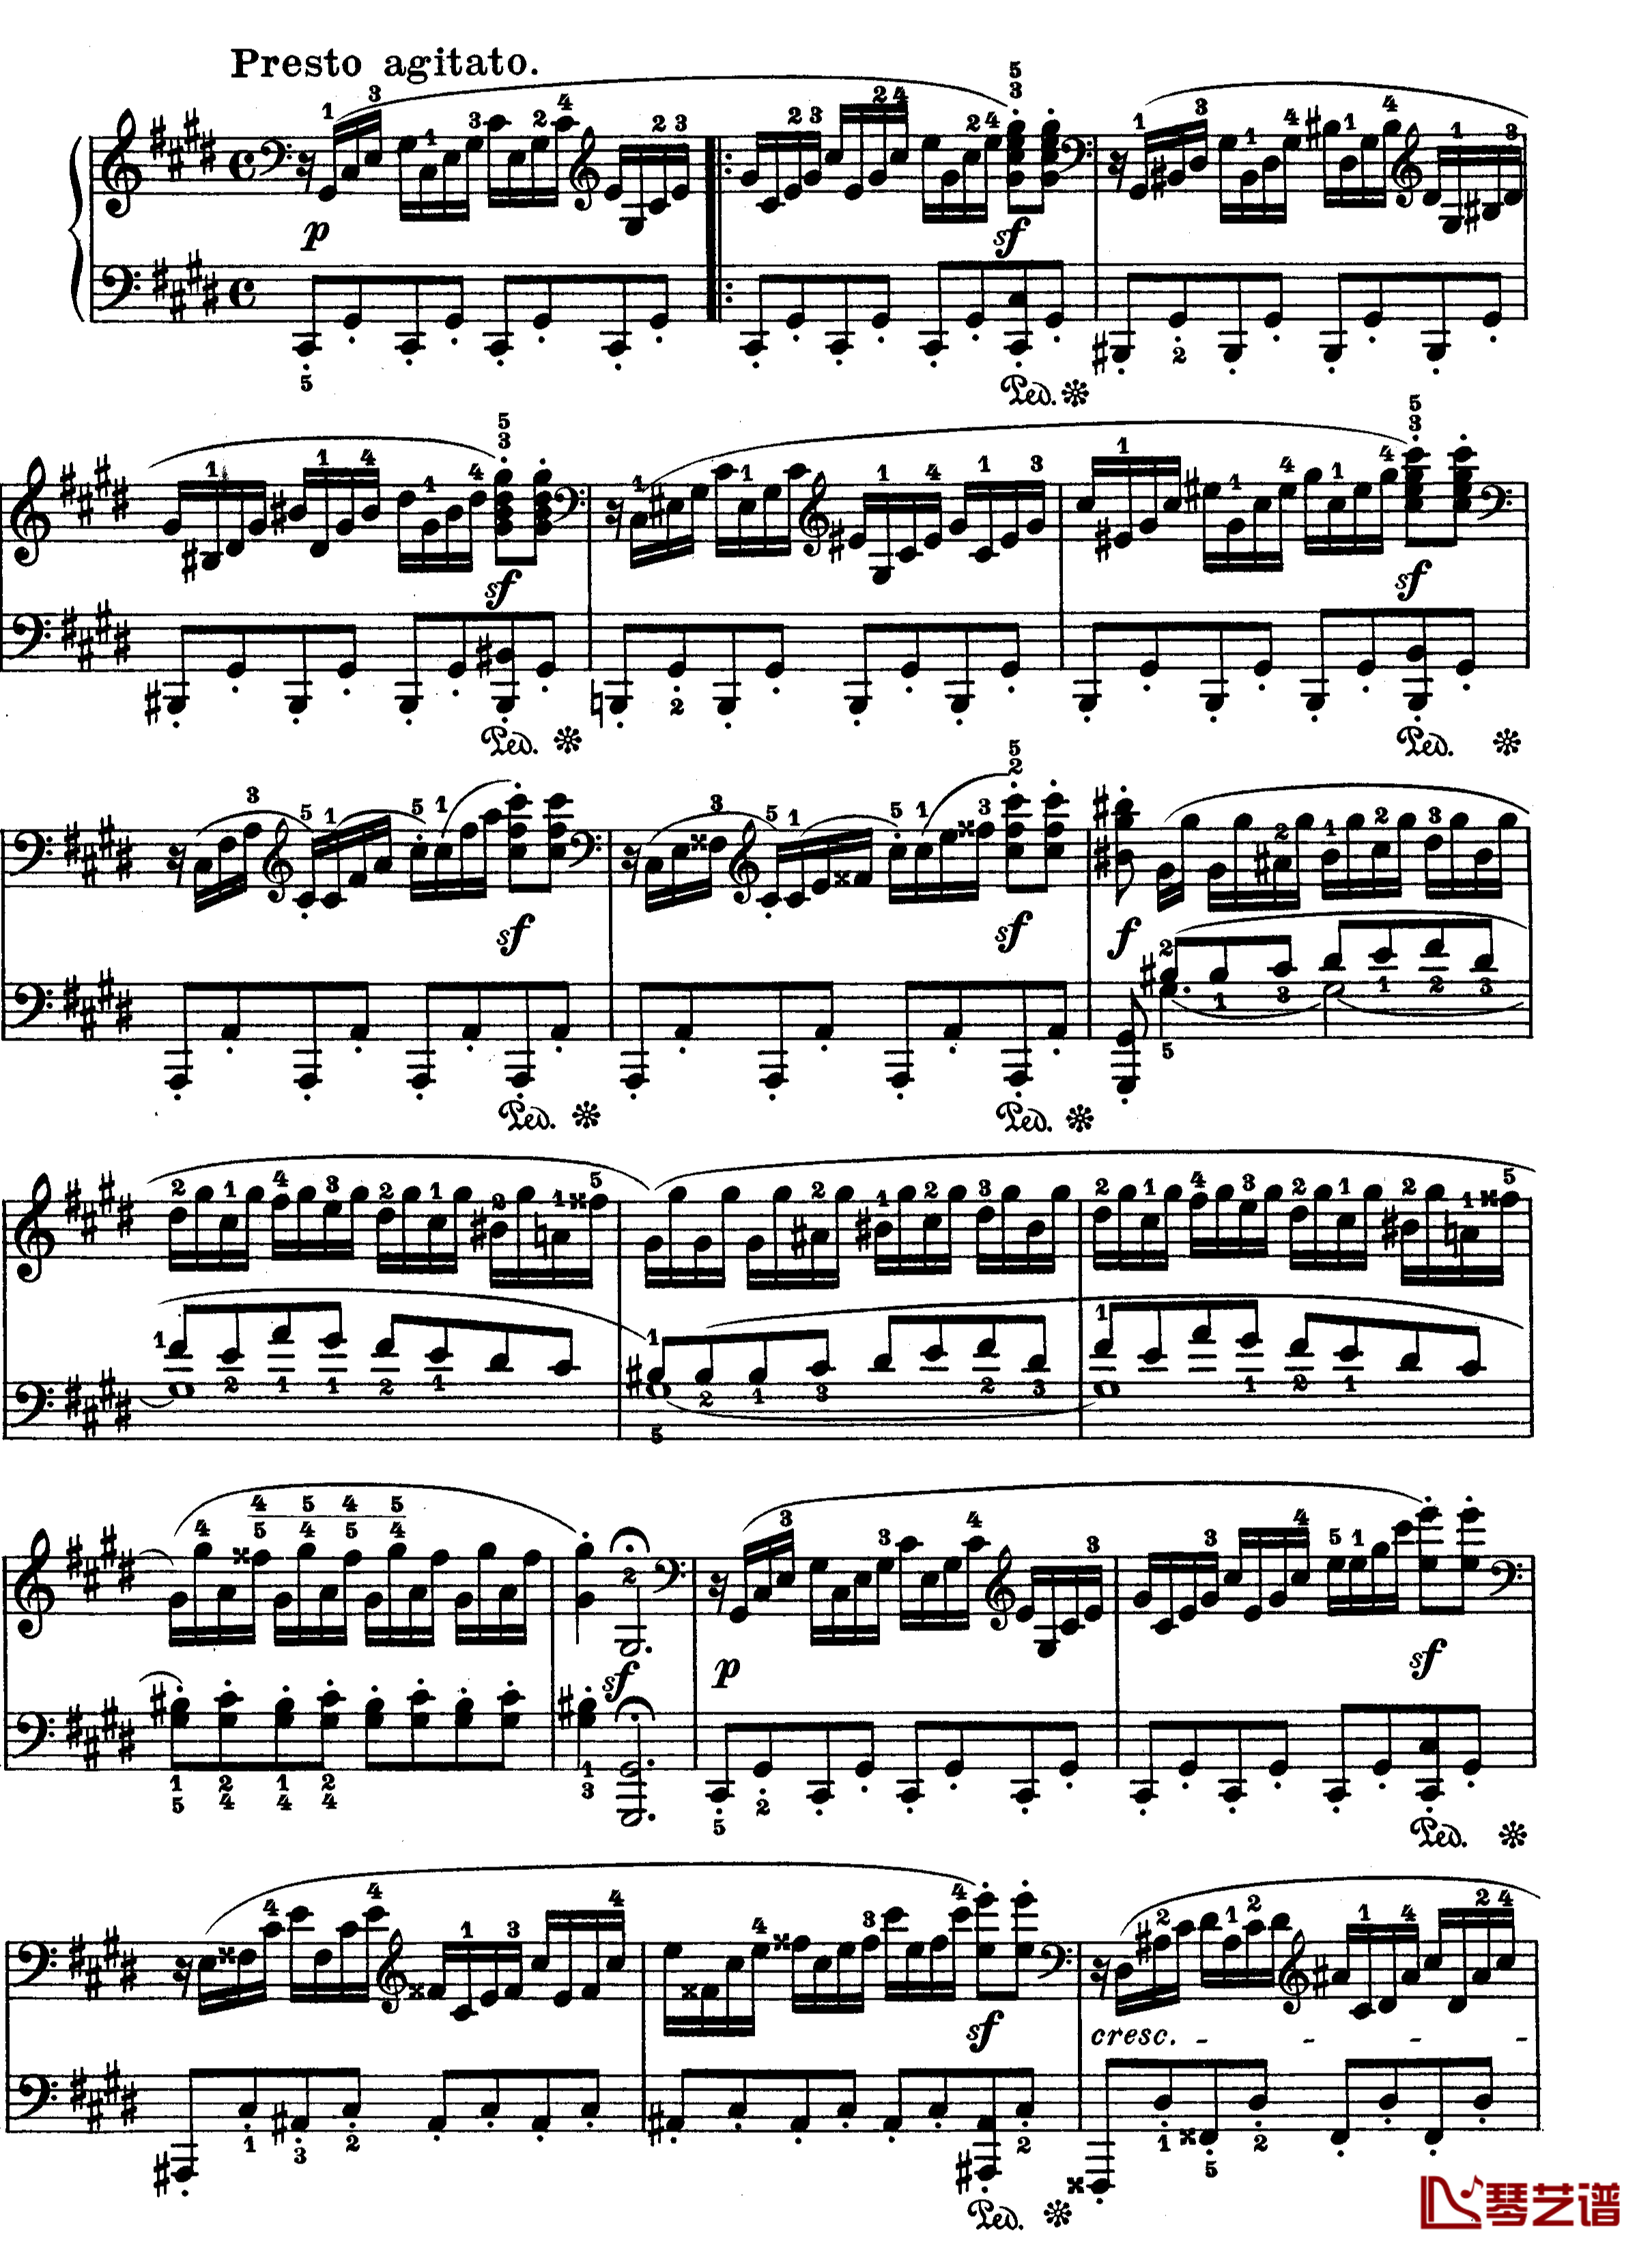 月光曲钢琴谱-第十四钢琴奏鸣曲-Op.27 No.2-贝多芬-beethoven5